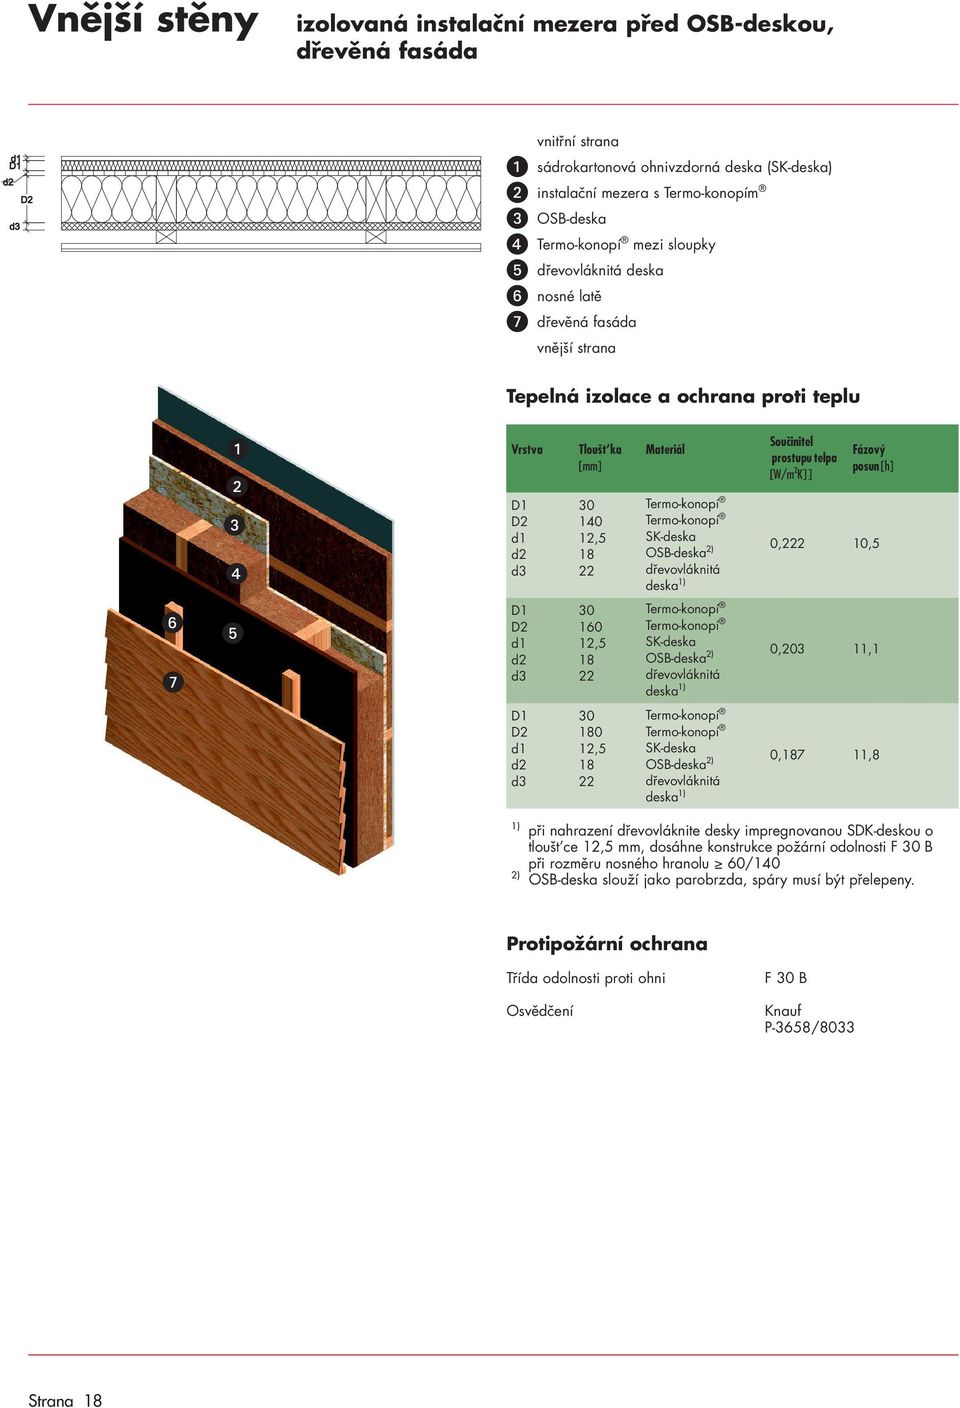 dřevovláknitá deska 0,203 11,1 0 OSB deska 2) dřevovláknitá deska 0,7 11,8 2) při nahrazení dřevovláknite desky impregnovanou SDK deskou o tloušt ce